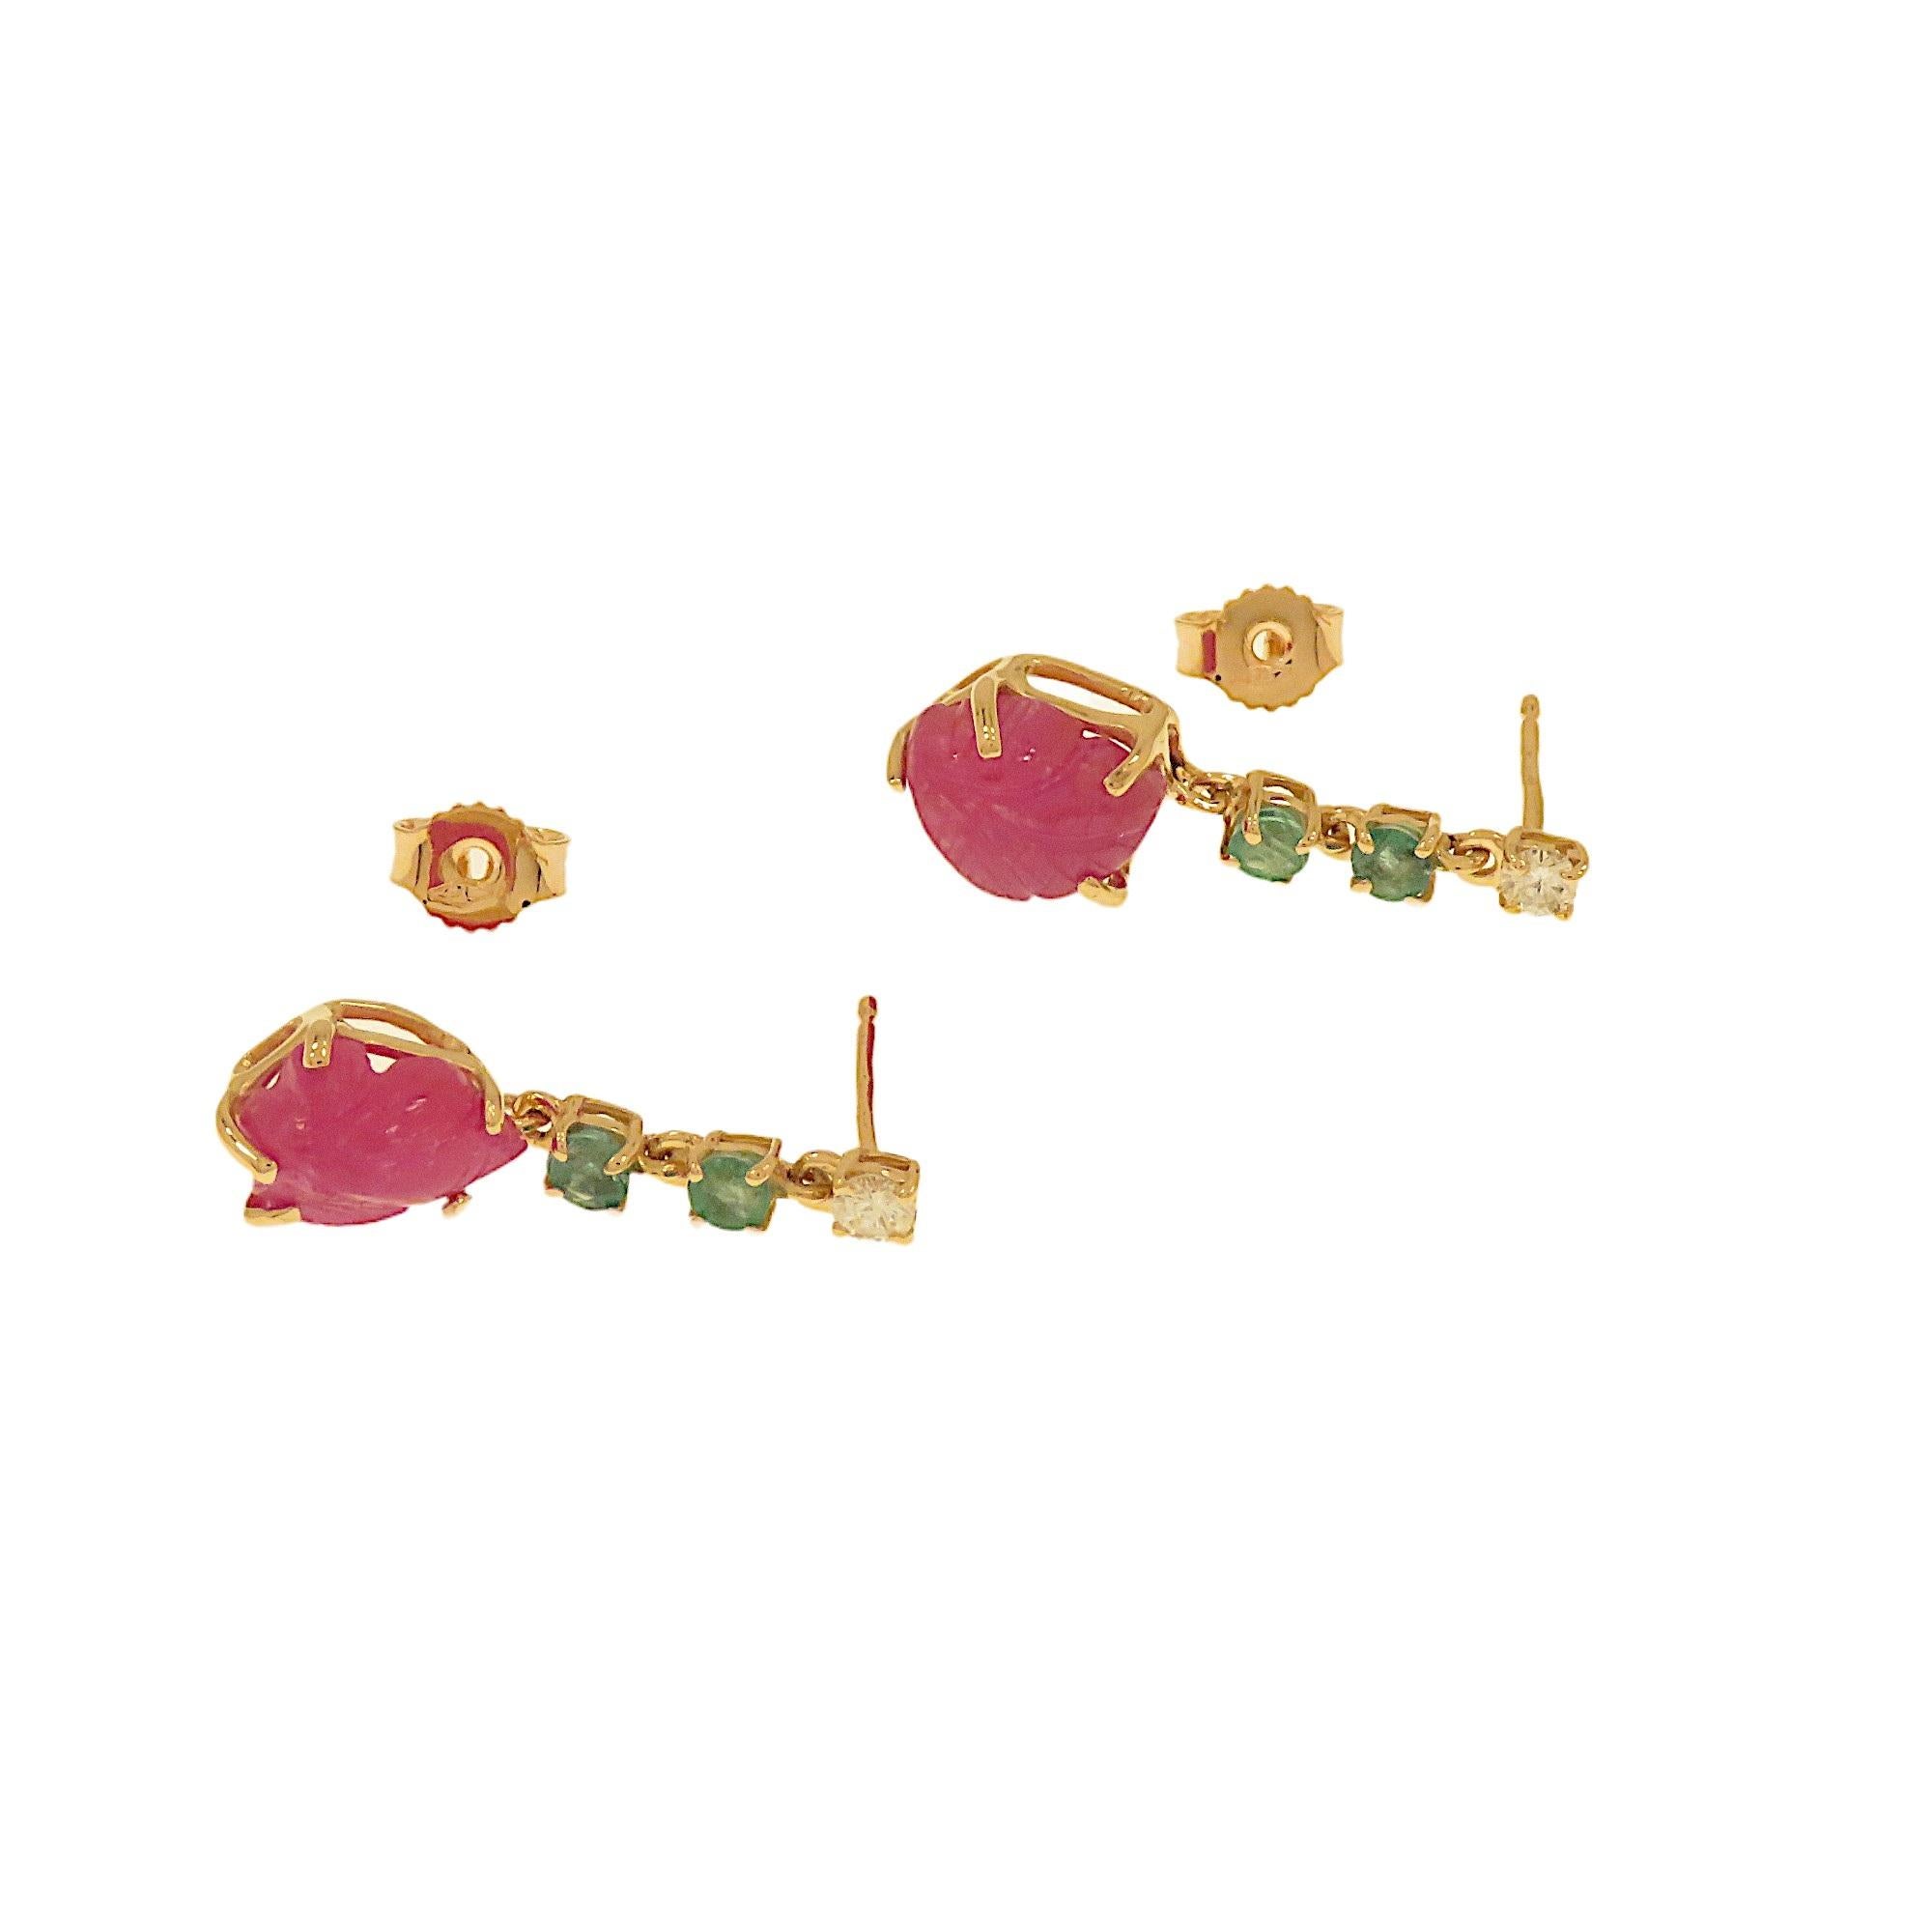 Contemporary Botta gioielli orecchini con diamanti rubini e smeraldi in oro rosa For Sale